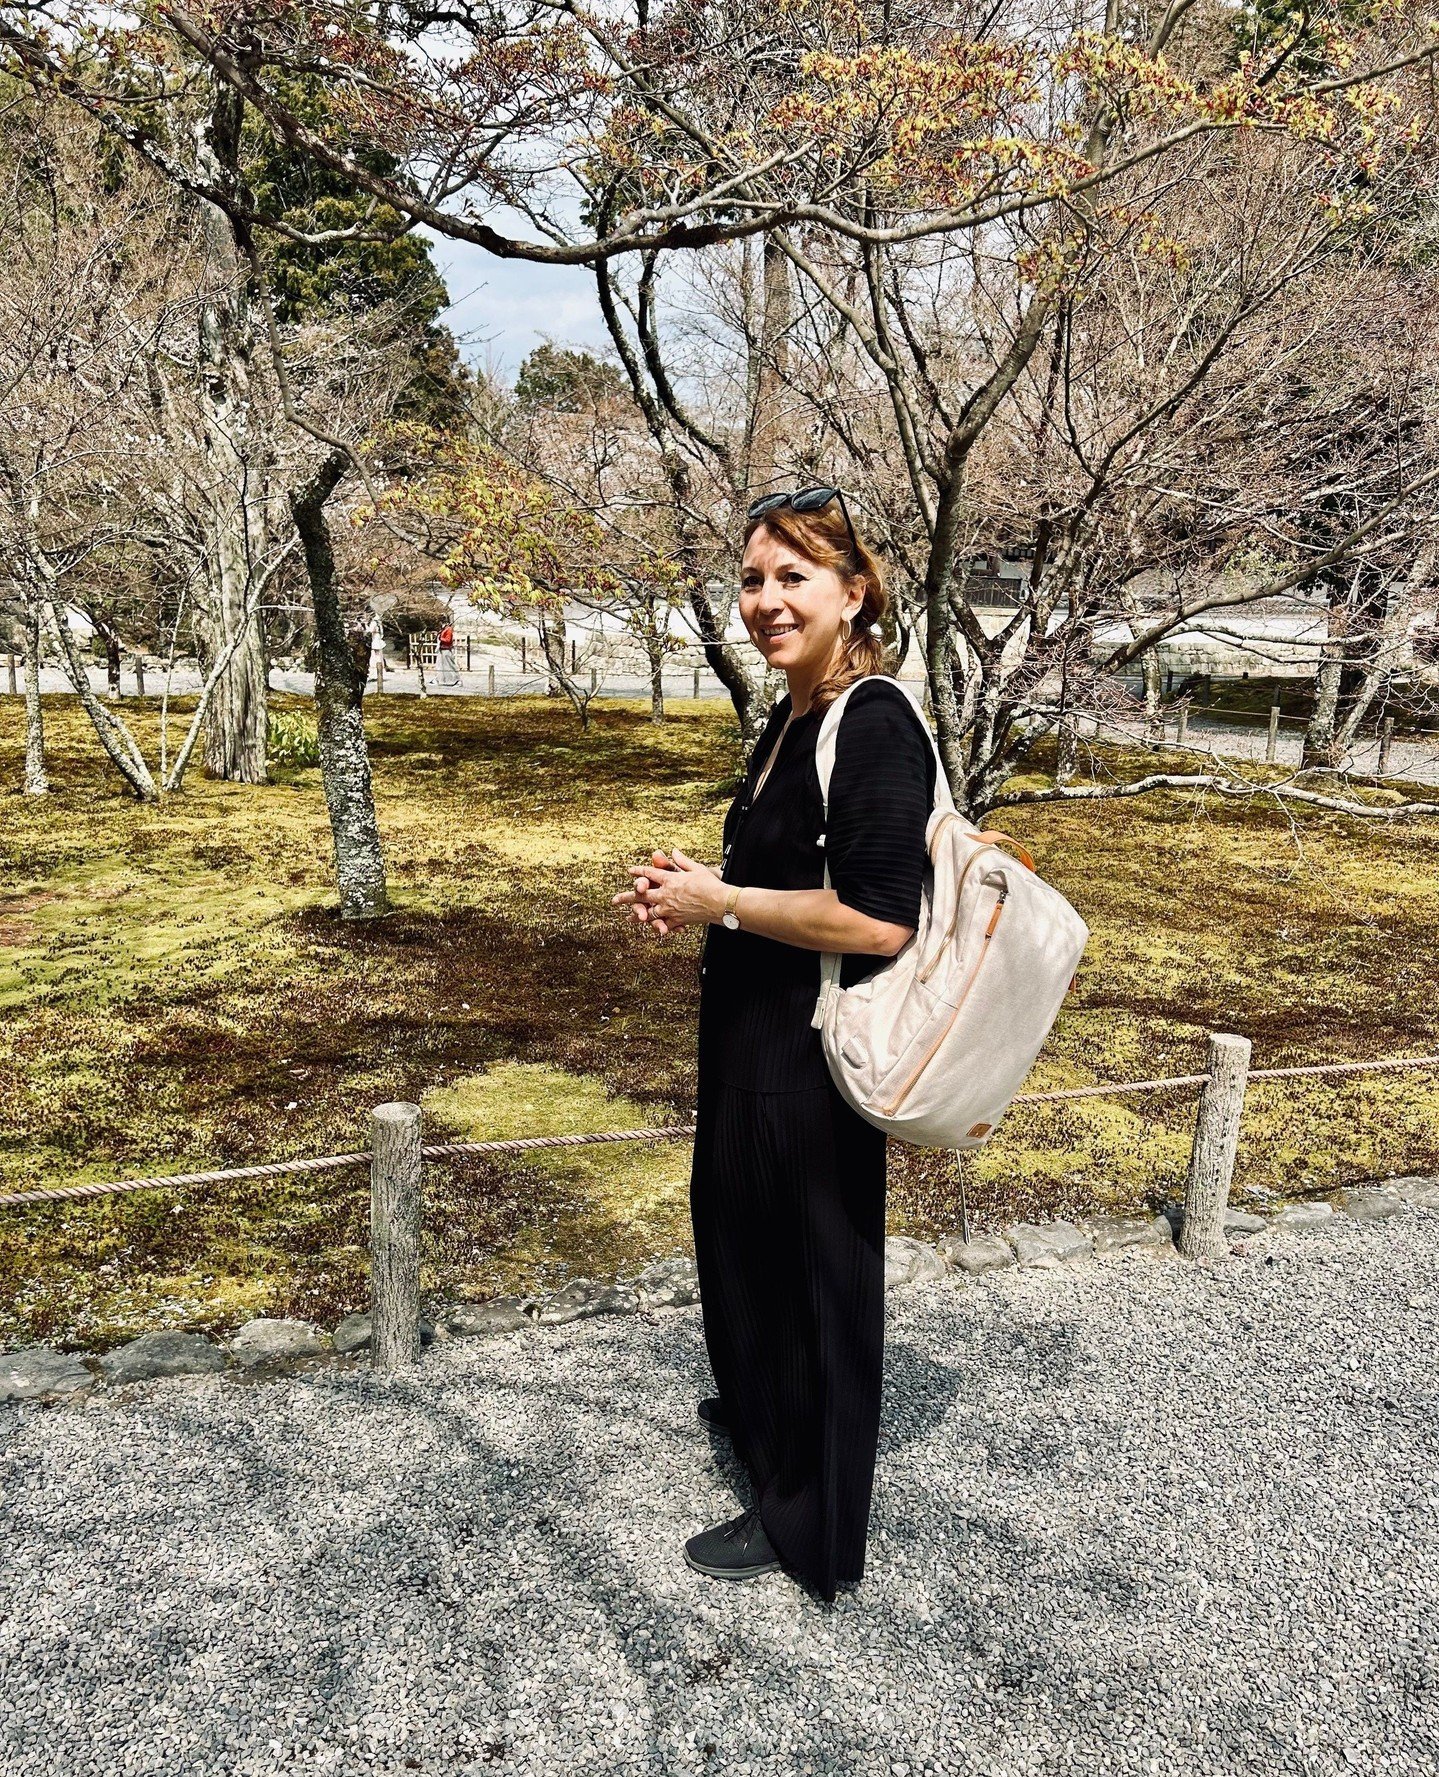 Kyoto war ein echtes Highlight mit seiner Mischung aus Tradition und Moderne! Die wundersch&ouml;nen Zen-G&auml;rten und der tolle Philosophenweg, den wir im Vorfr&uuml;hling mit erster Kirschbl&uuml;te erlebt haben 🌸 der Philosoph und Professor Nis